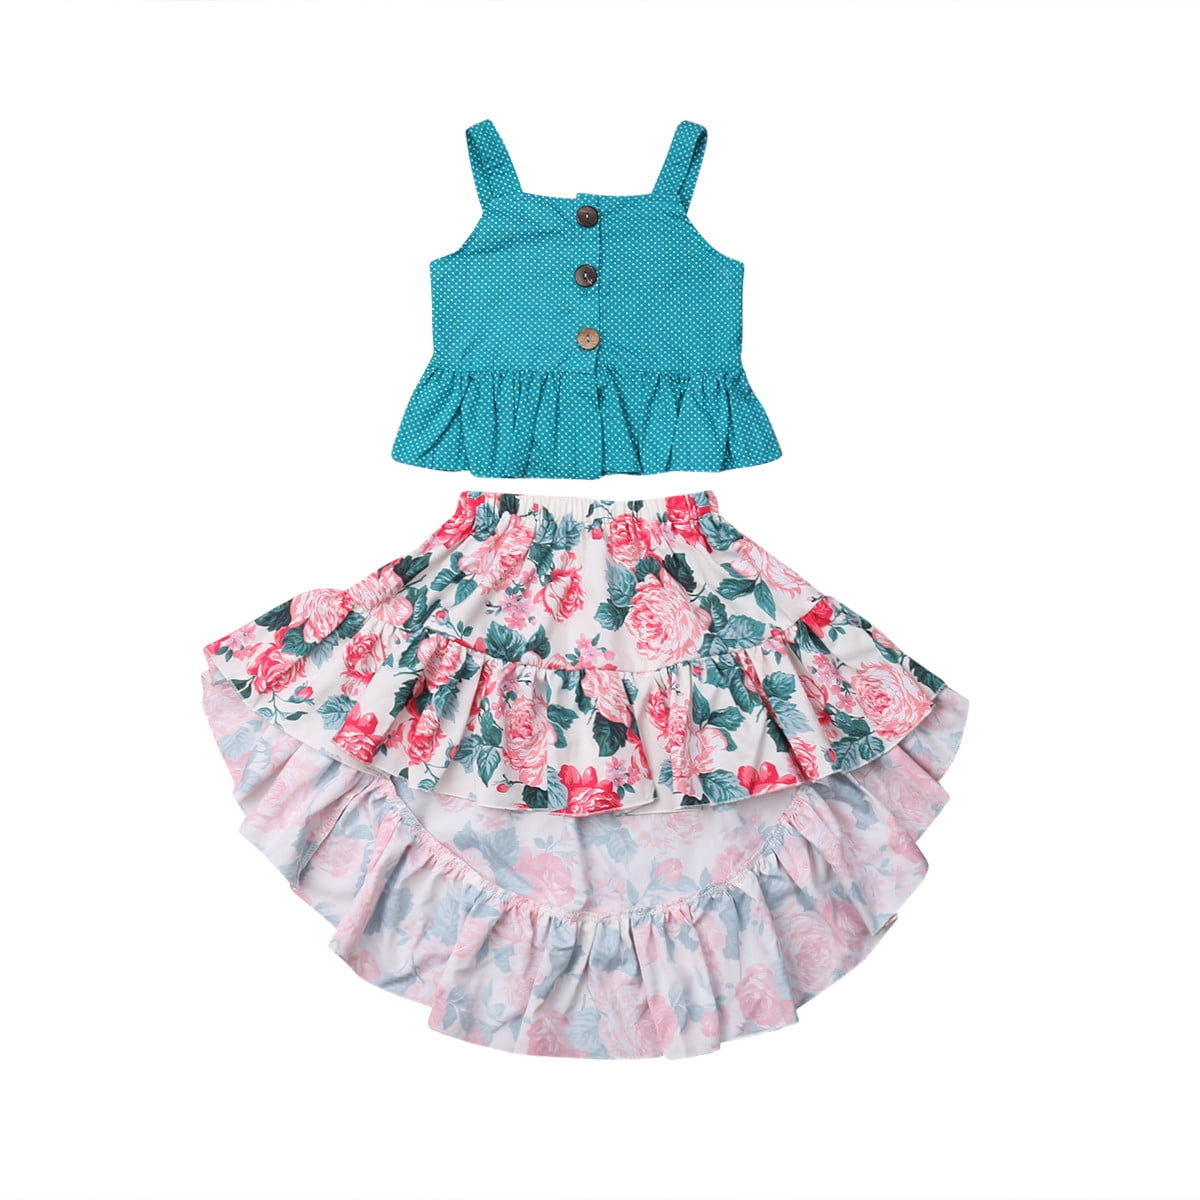 crop top dress for kids